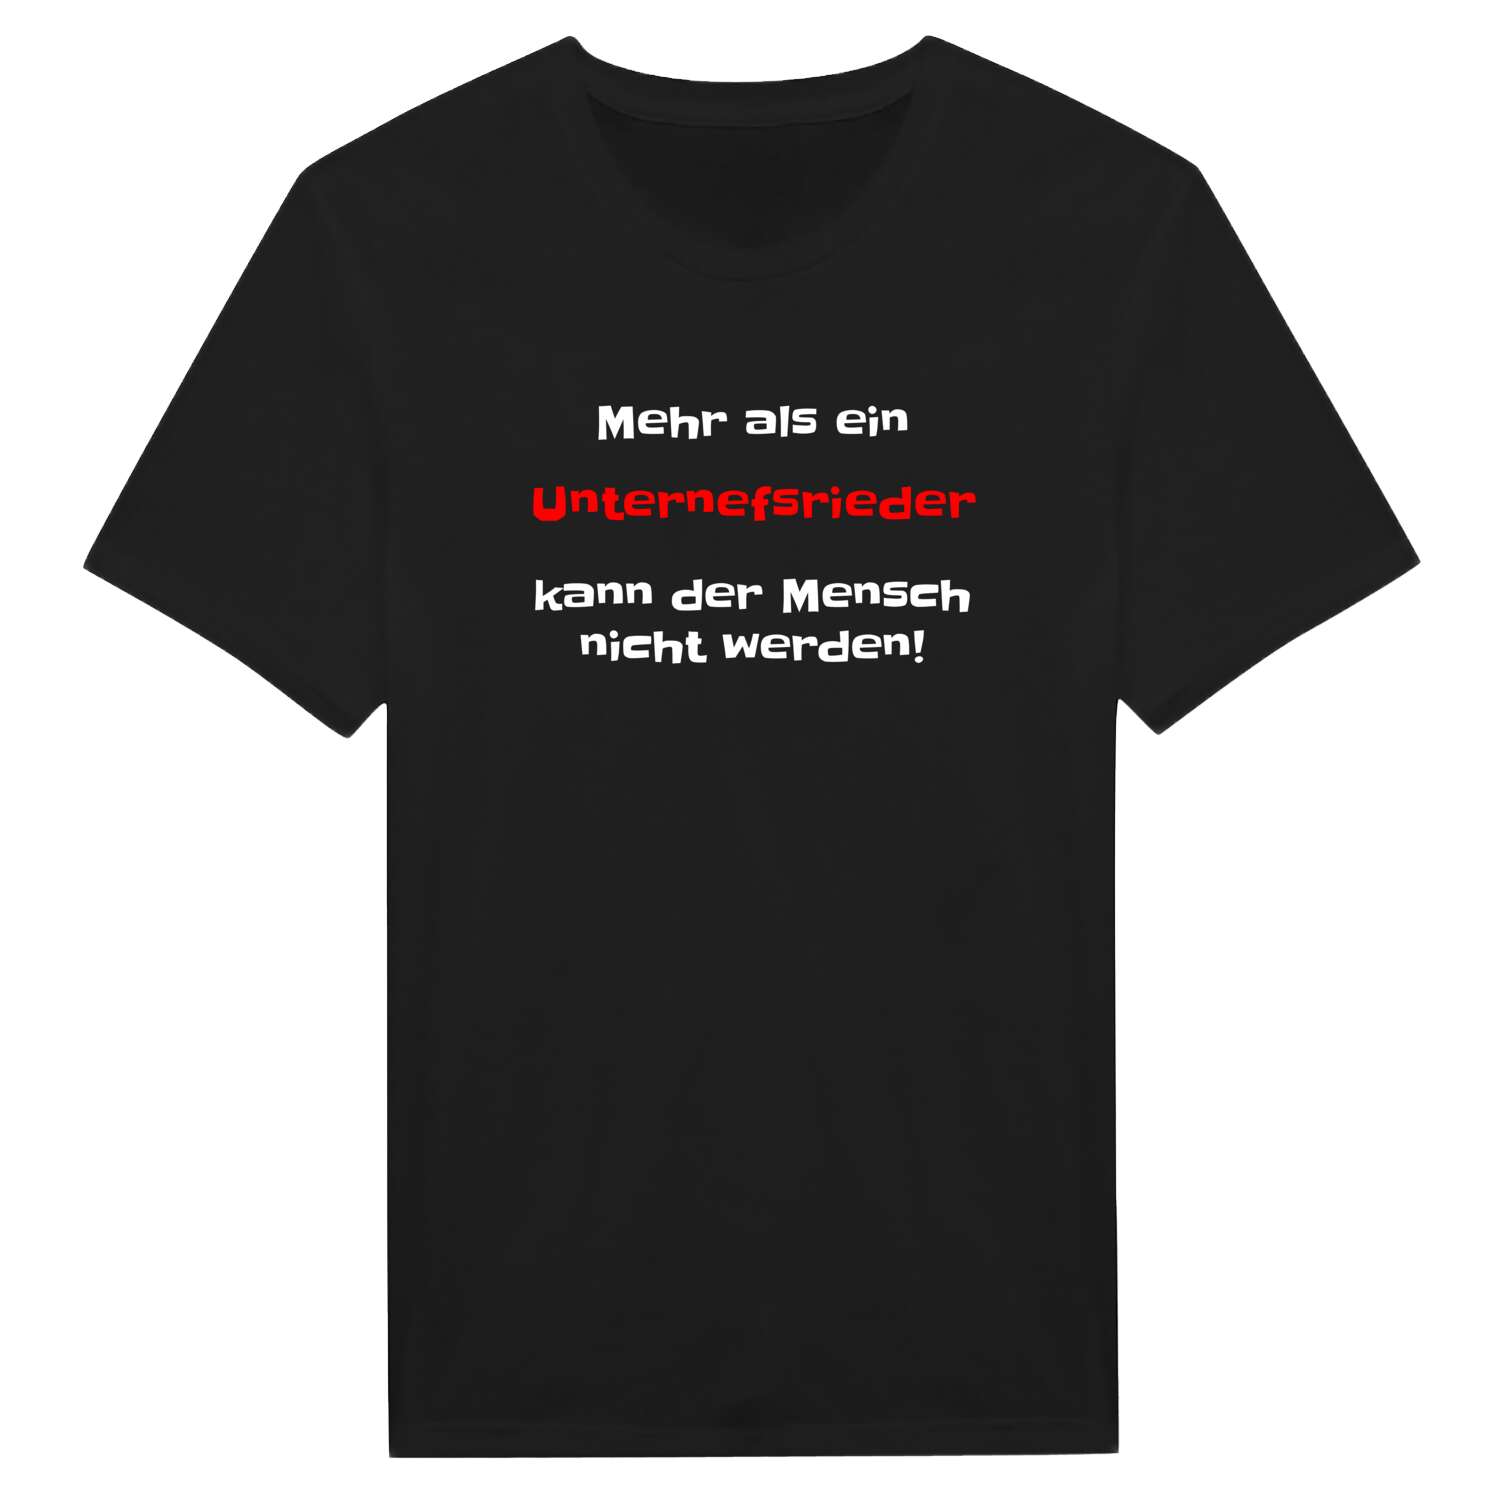 Unternefsried T-Shirt »Mehr als ein«